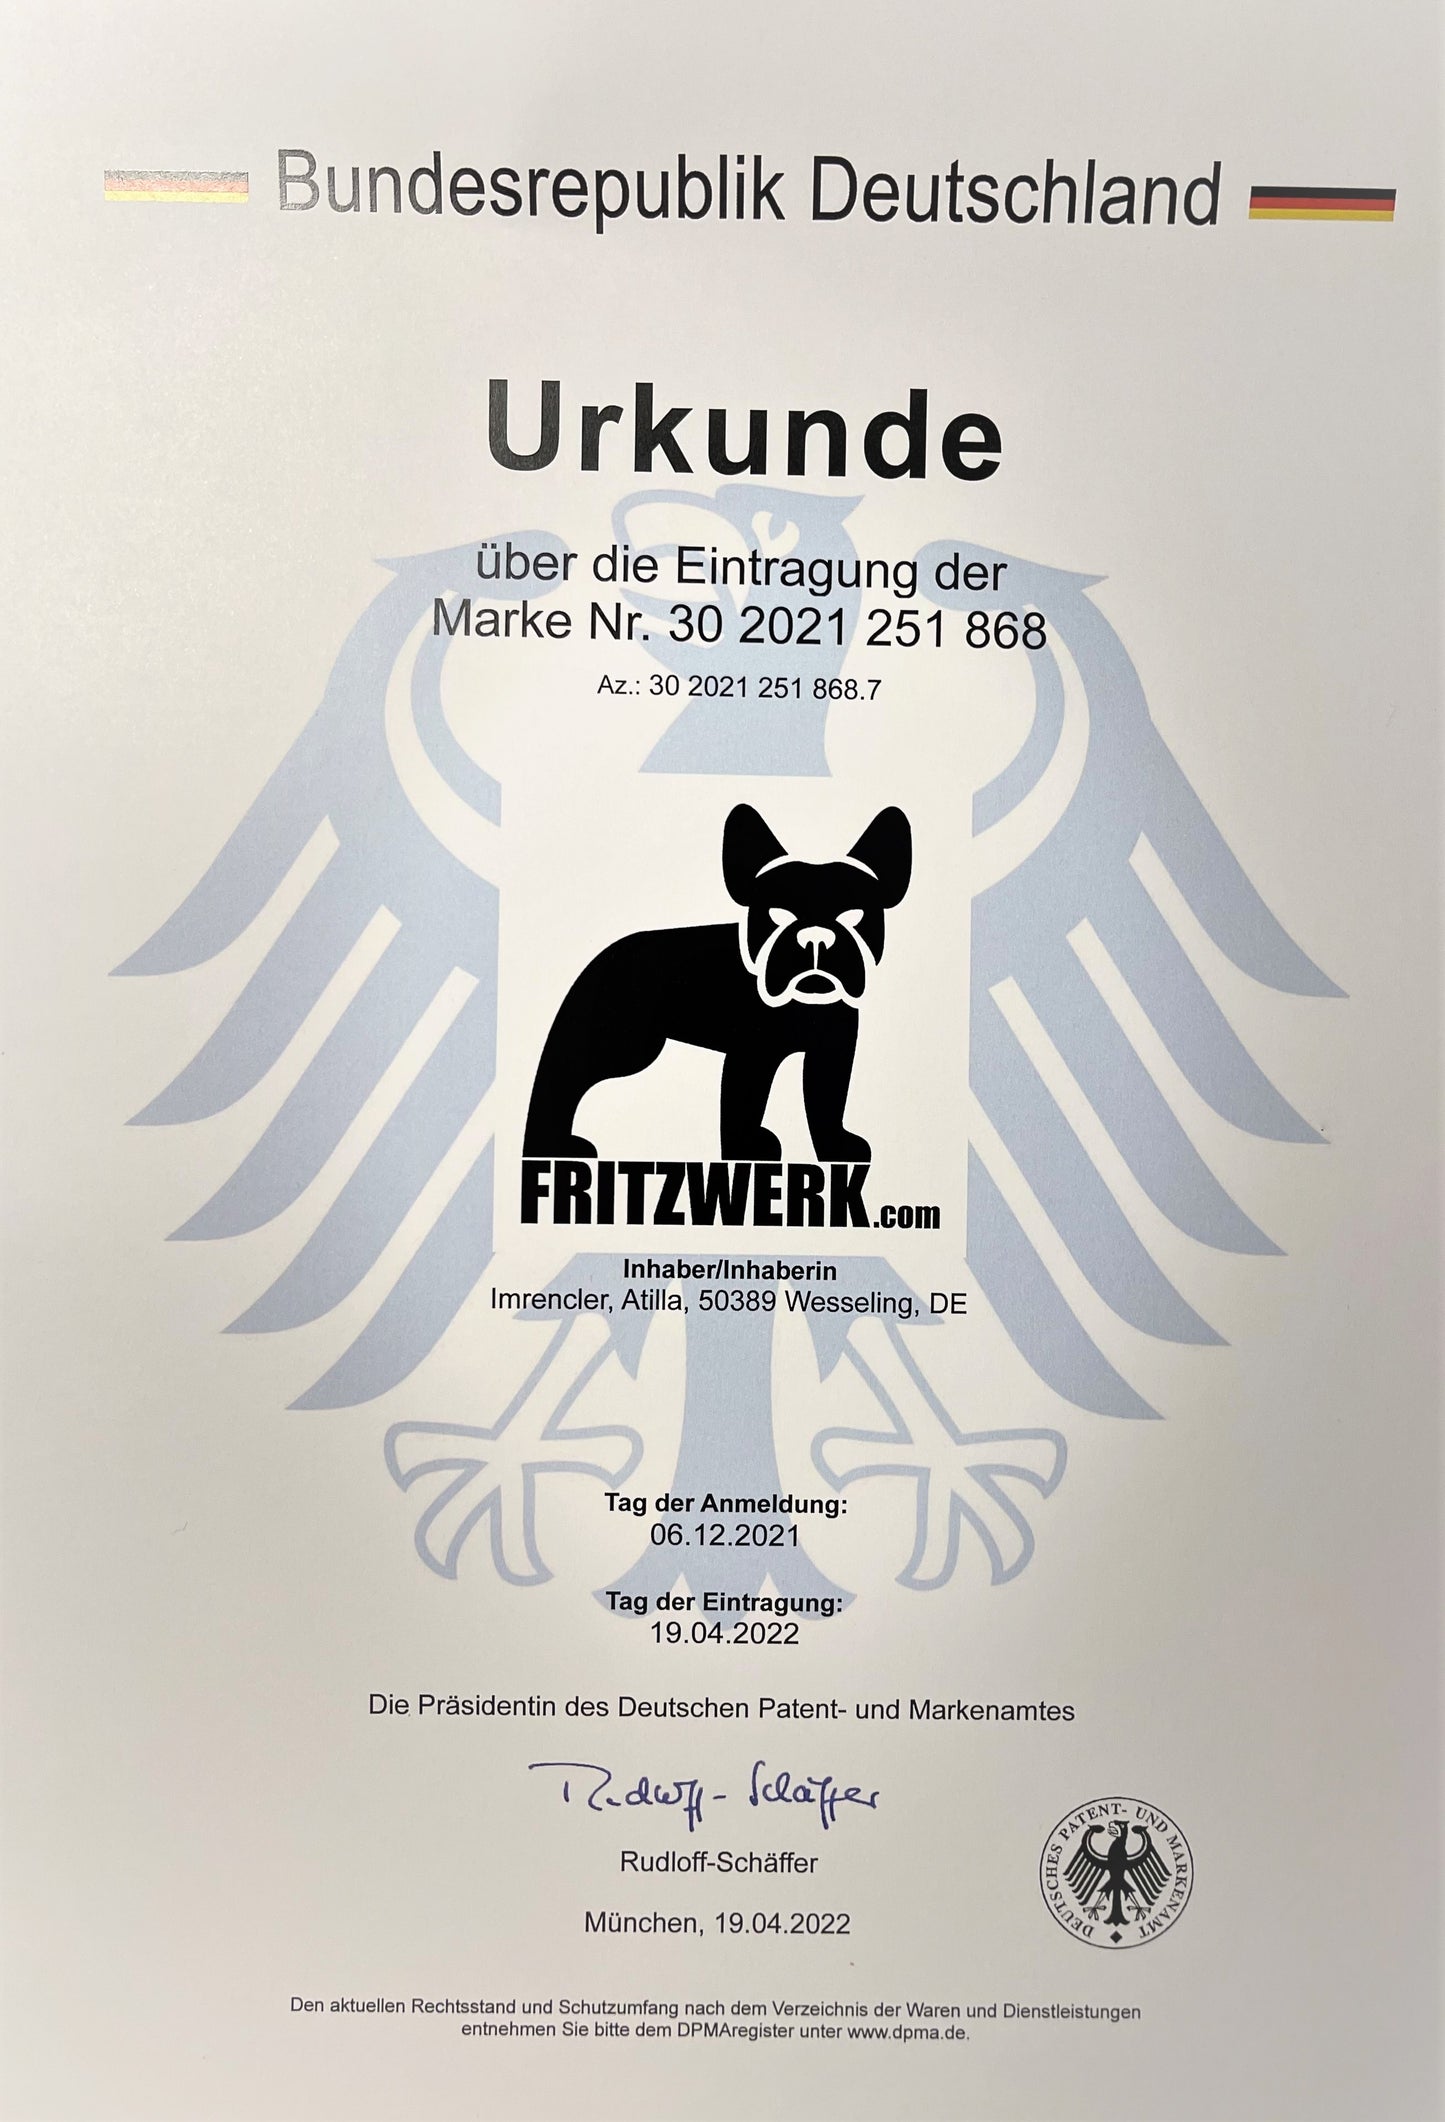 FRITZWERK Slim Fritz - Premium Business Wallet Echtleder Braun Cardholder Portmonee Geldbörse Kreditkartenetui A++